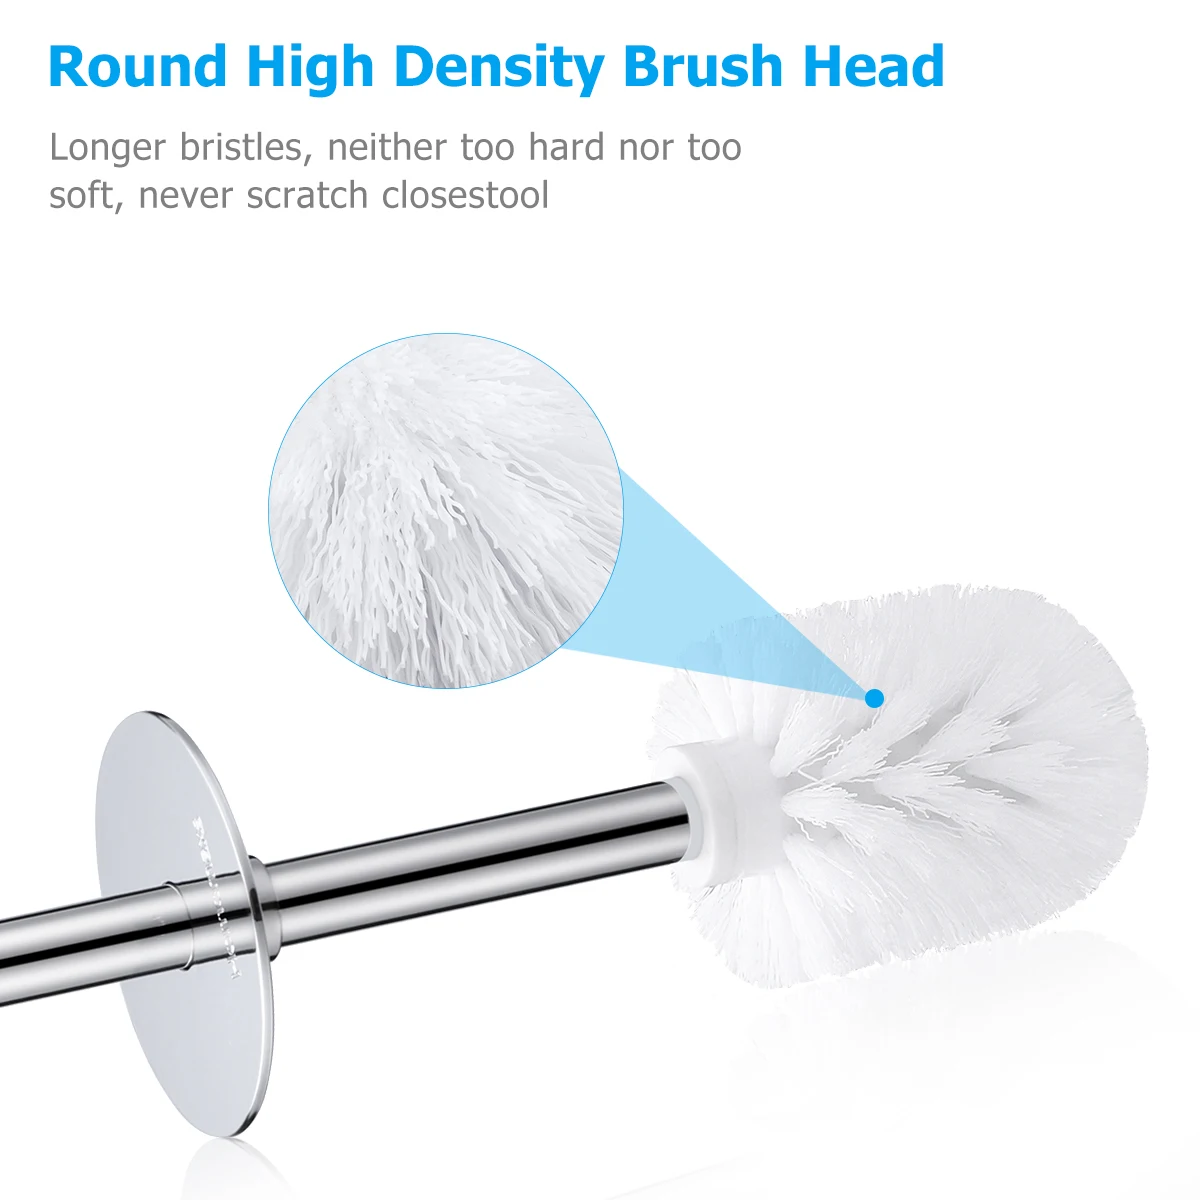 

HOMEMAXS Toilet Brush and Holder Set Good Grip Compact Modern Design Toilet Bowl Cleaner Brush Set for Bathroom (White)